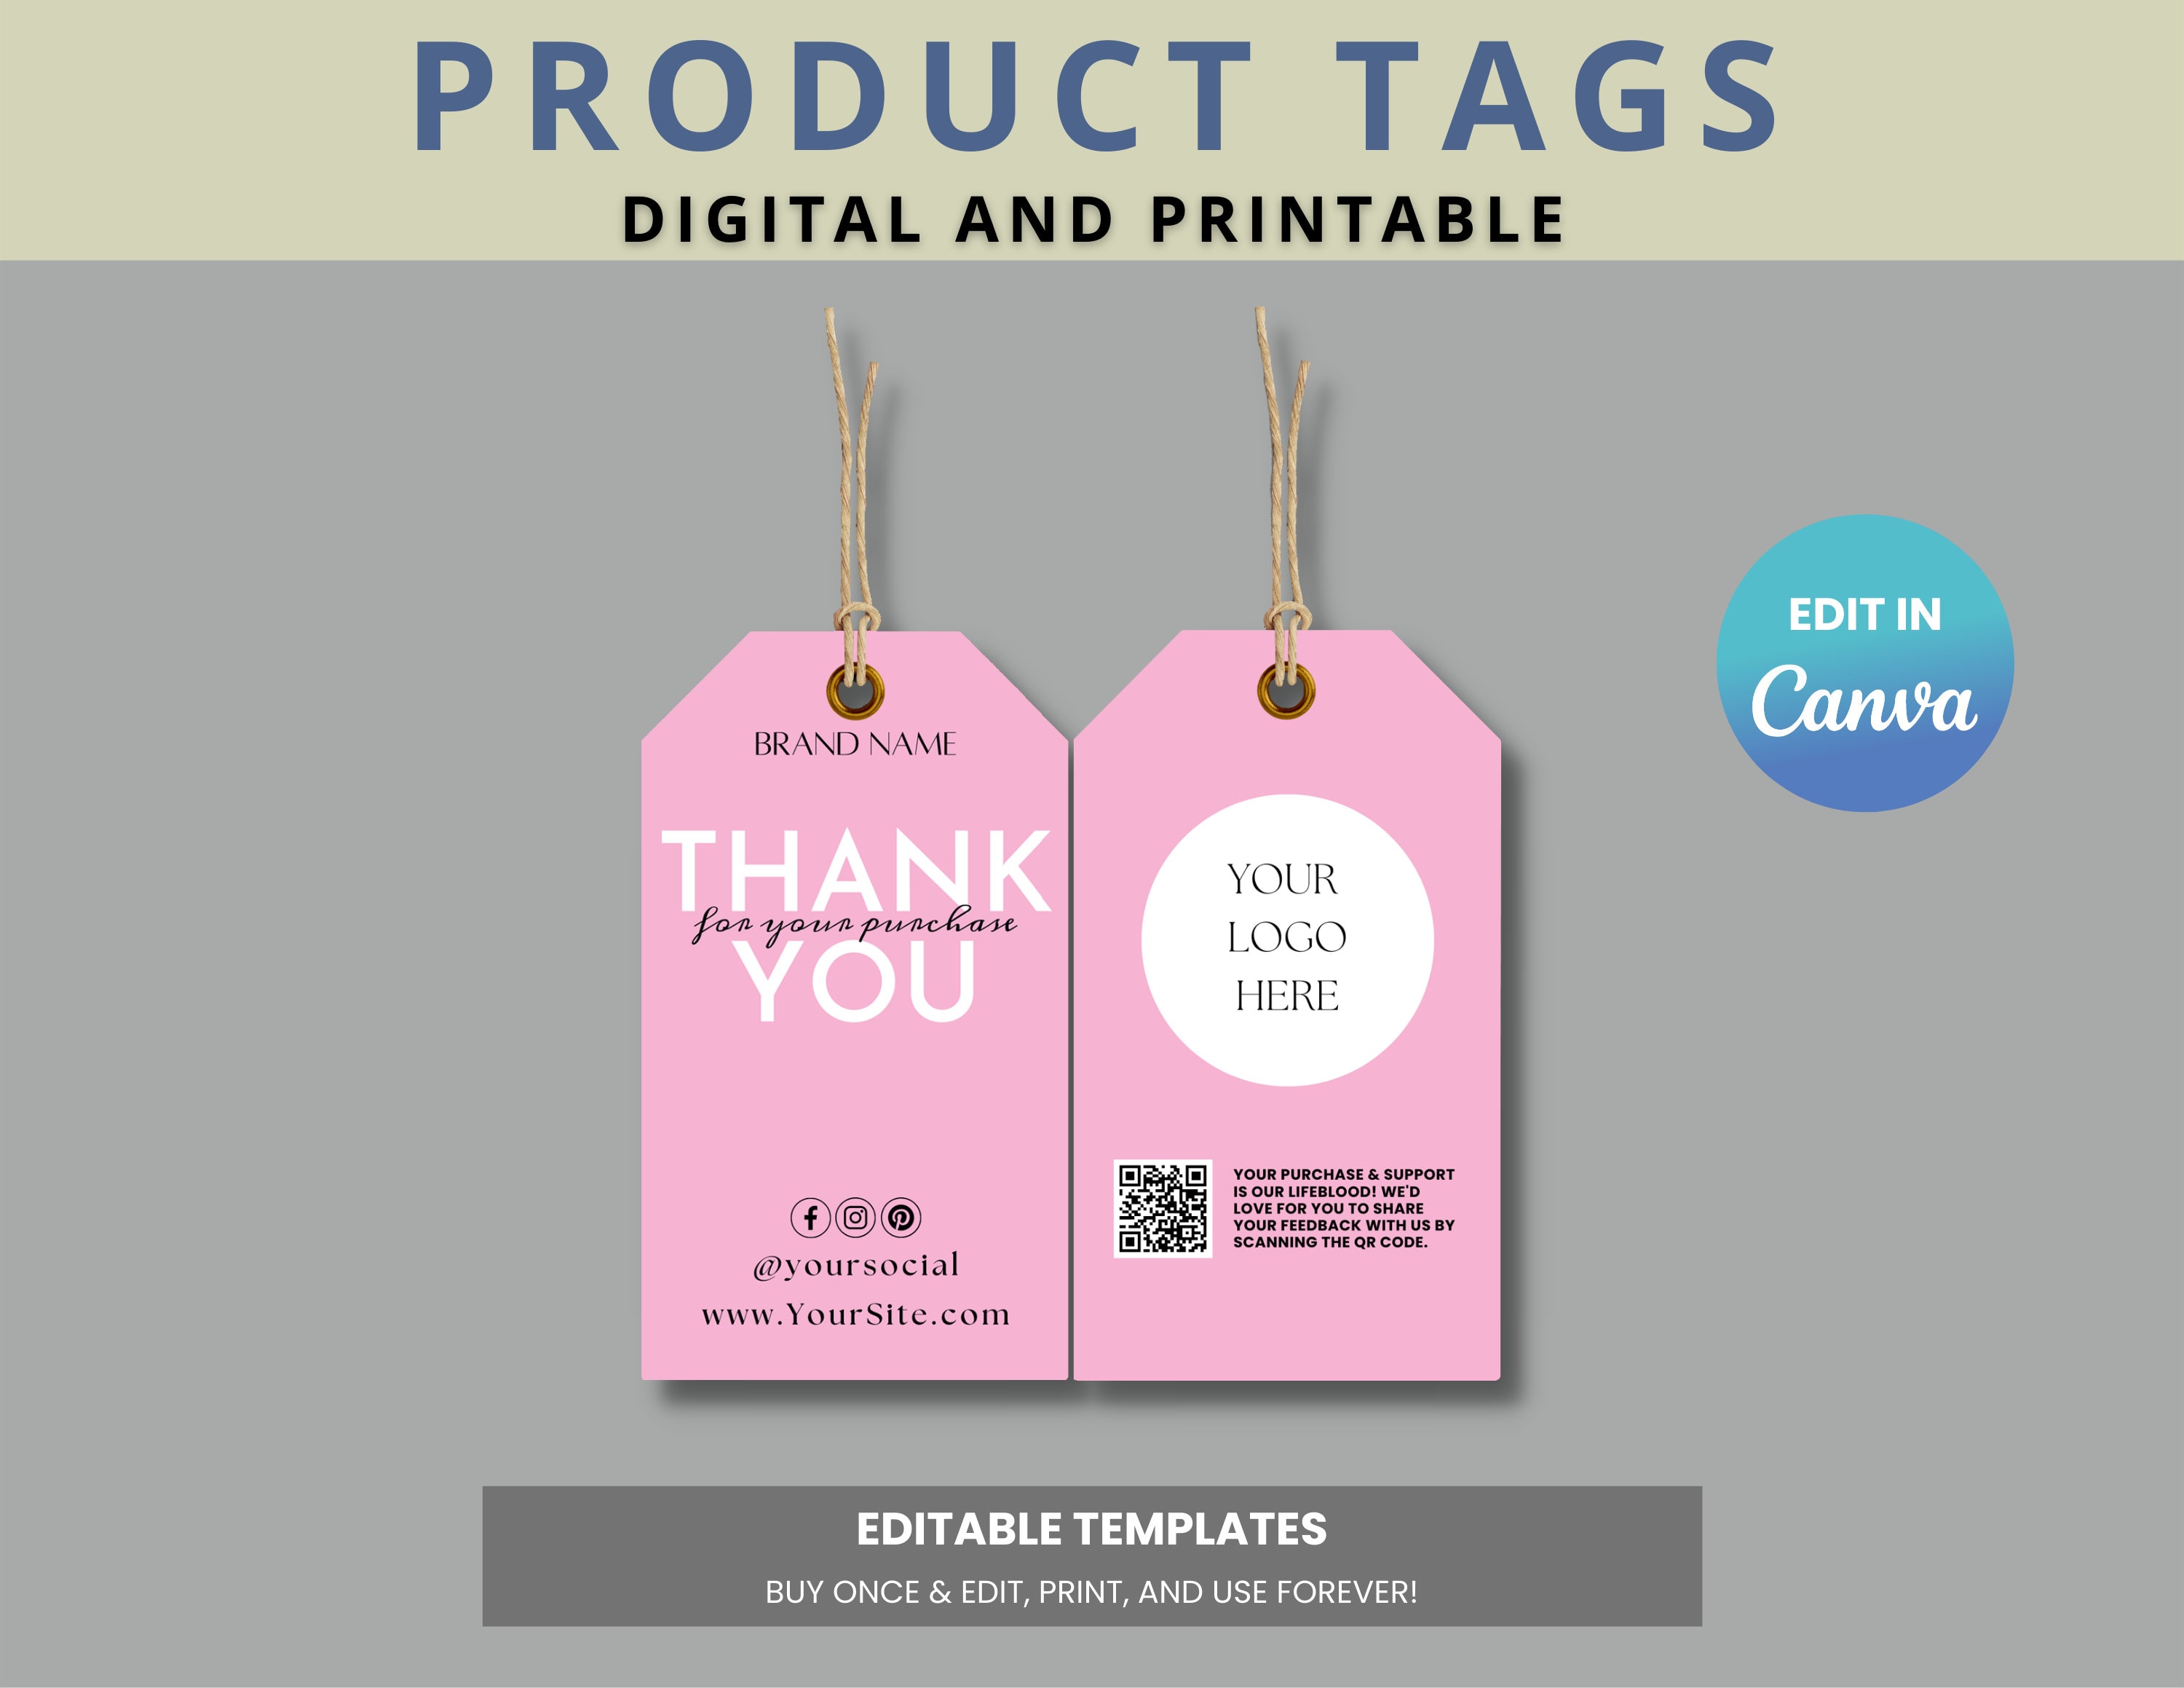 Printable Hang Tag Editable Clothing Tag Price Tag Hang Tag Design